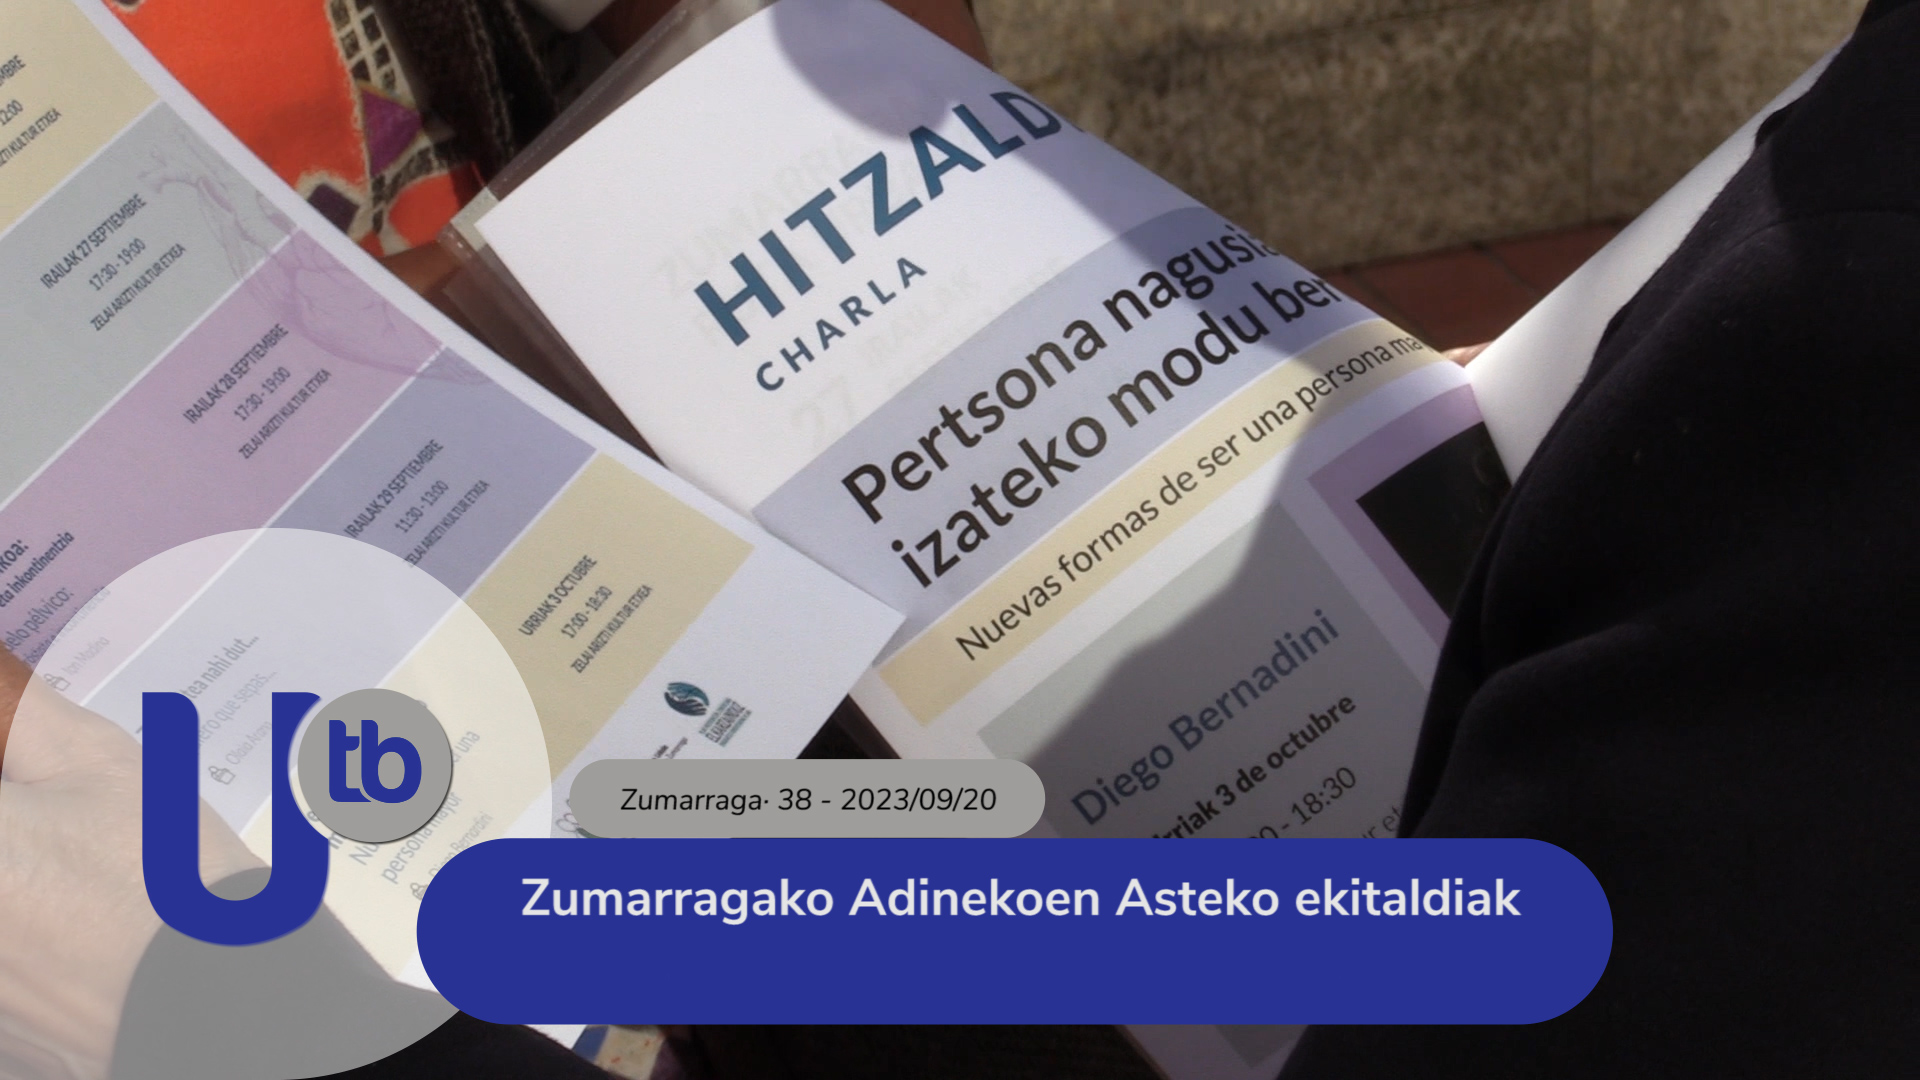 Actos de la Semana de las Personas Mayores de Zumarraga./ Zumarragako Adinekoen Asteko ekitaldiak